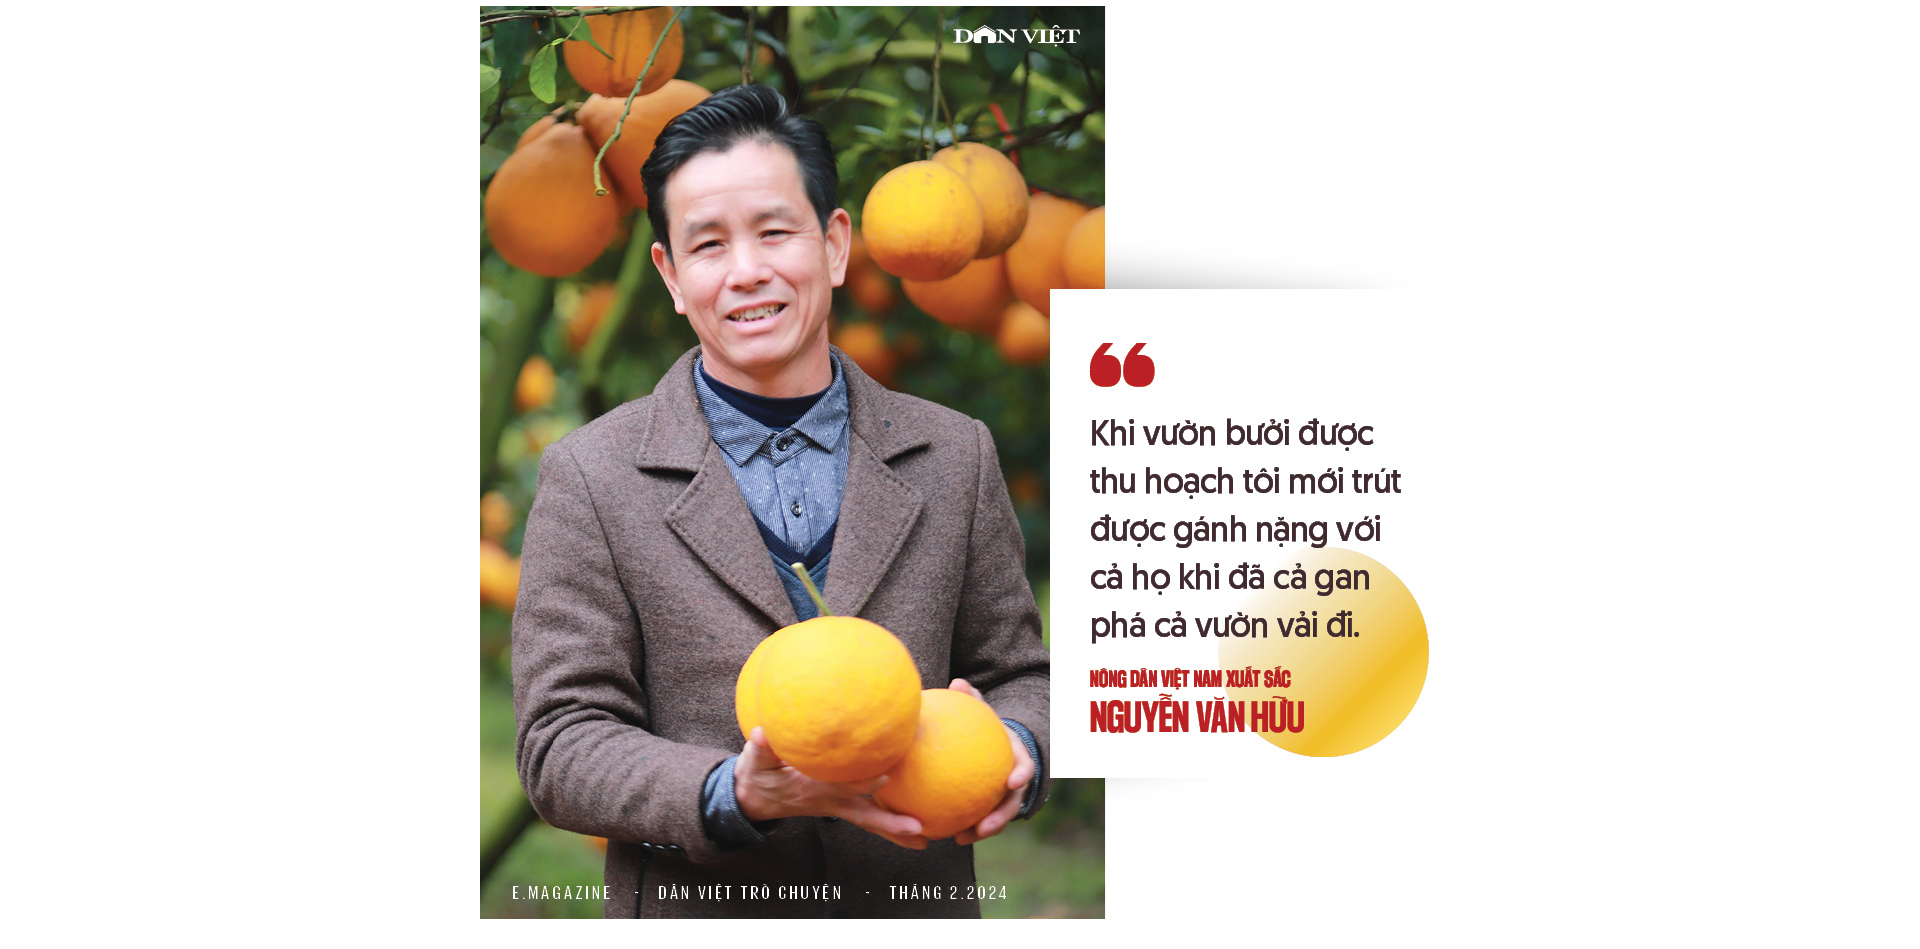 Nông dân Việt Nam xuất sắc Nguyễn Văn Hữu: "Cãi" cả họ phá vải thiều trồng bưởi và khu vườn hạnh phúc- Ảnh 5.